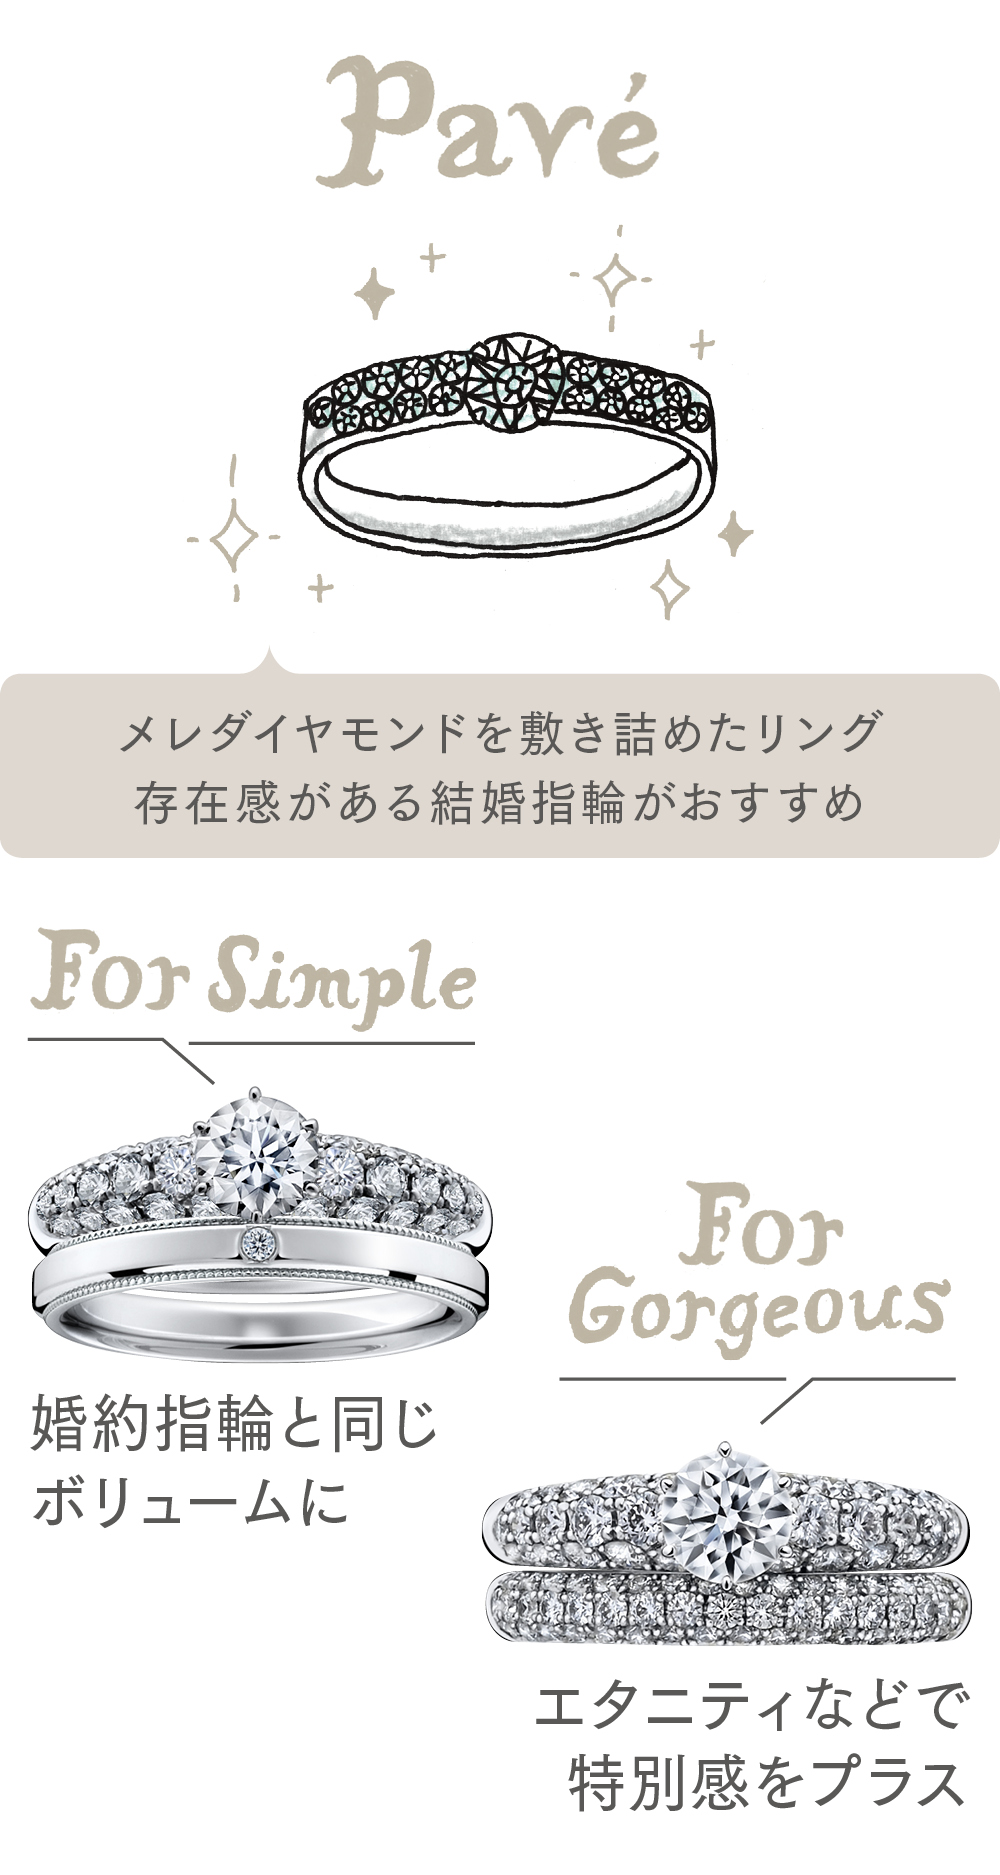 婚約指輪のデザインが「パヴェ」の場合